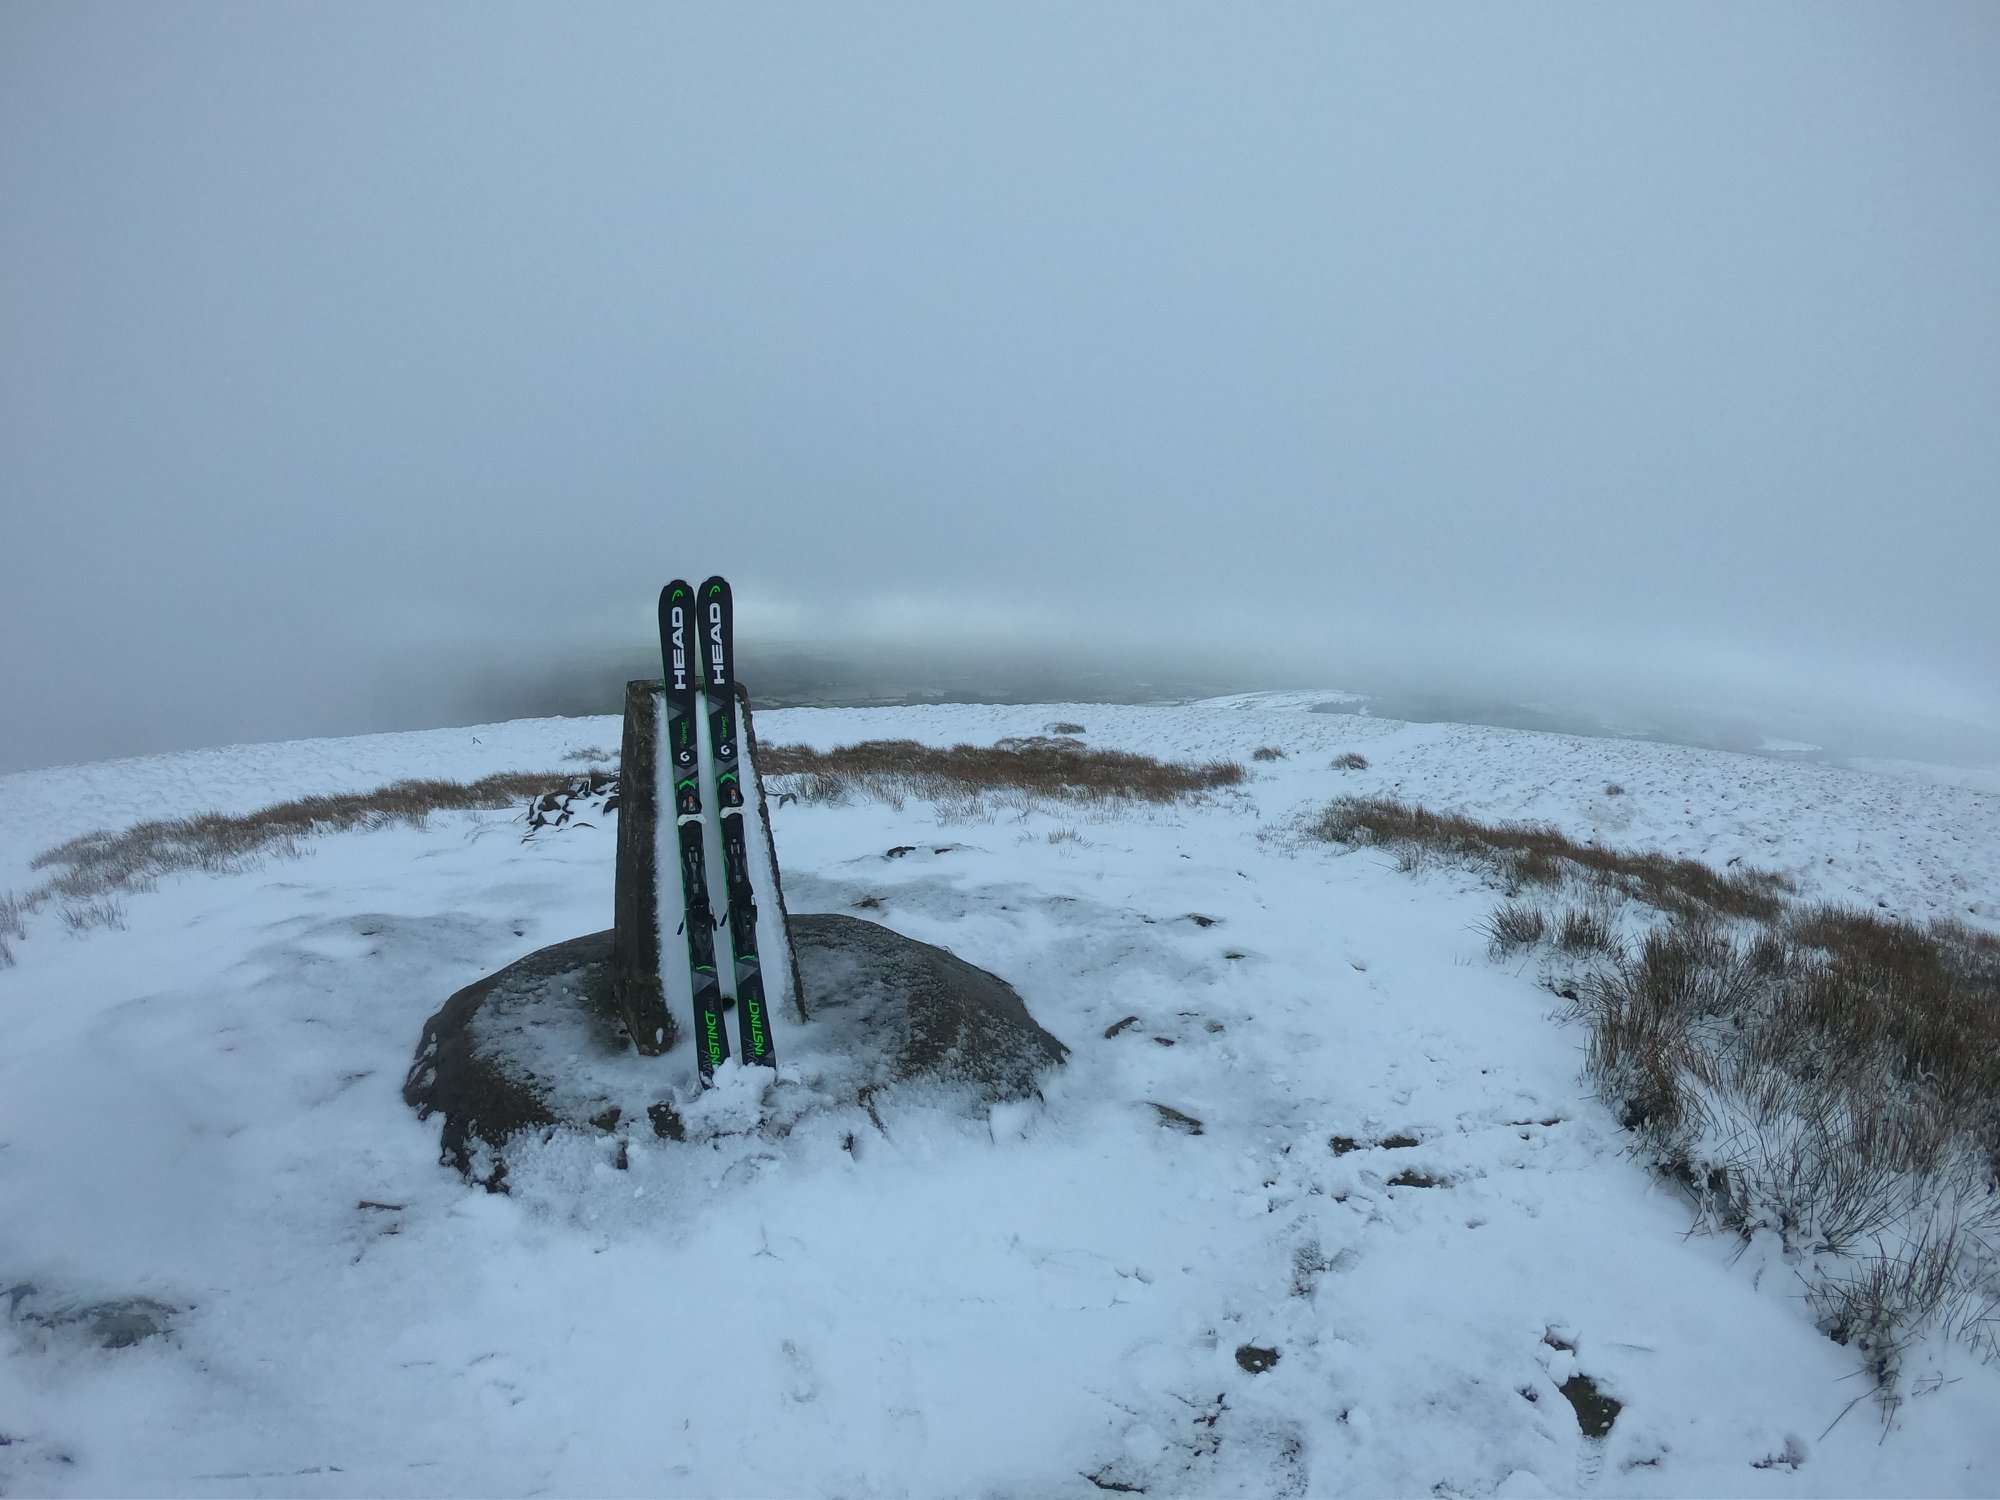 The summit of Foel Cwmcerwyn